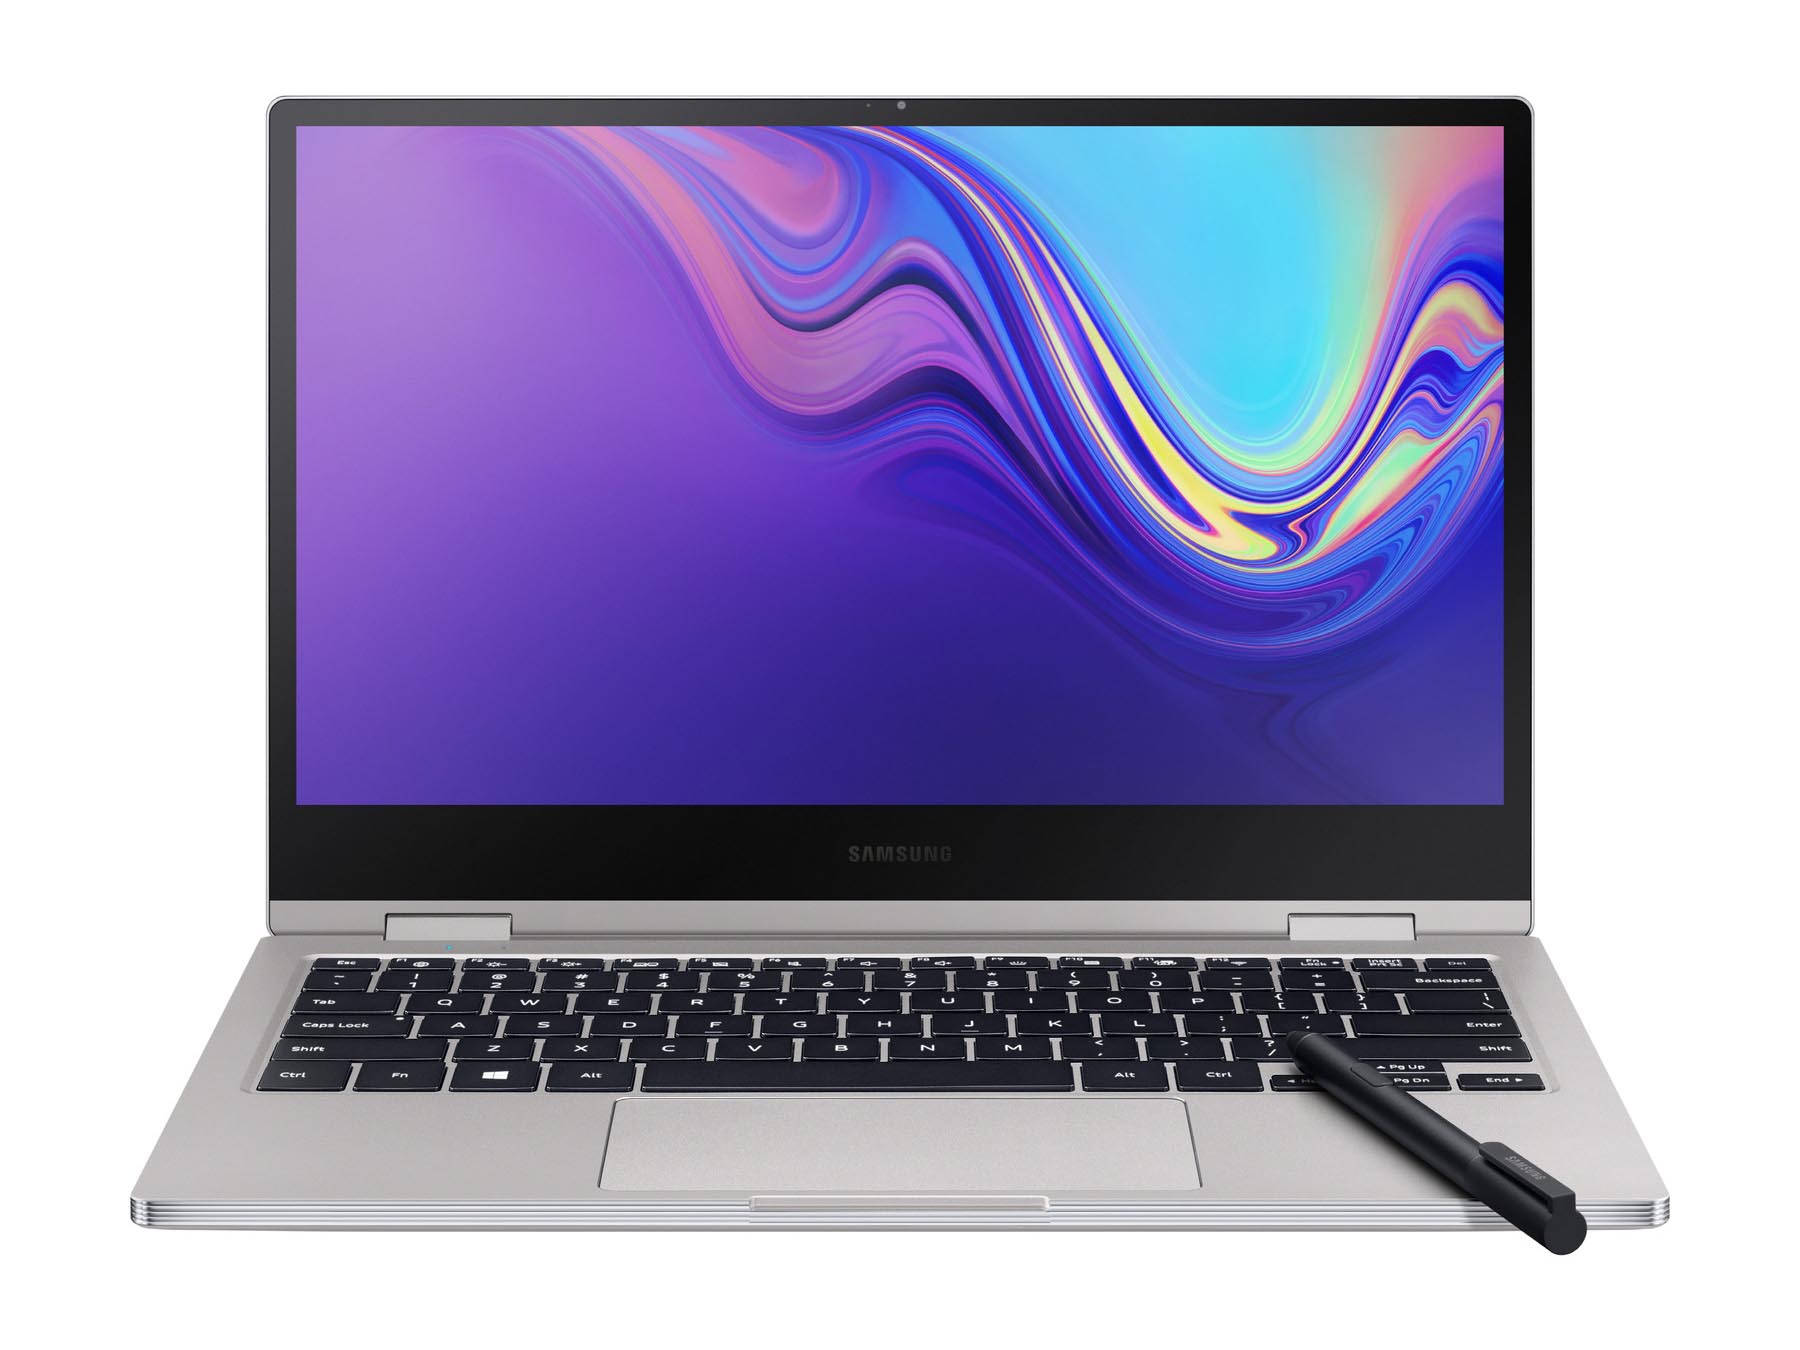 Samsung Notebook 9 Pro 13 inch 2019